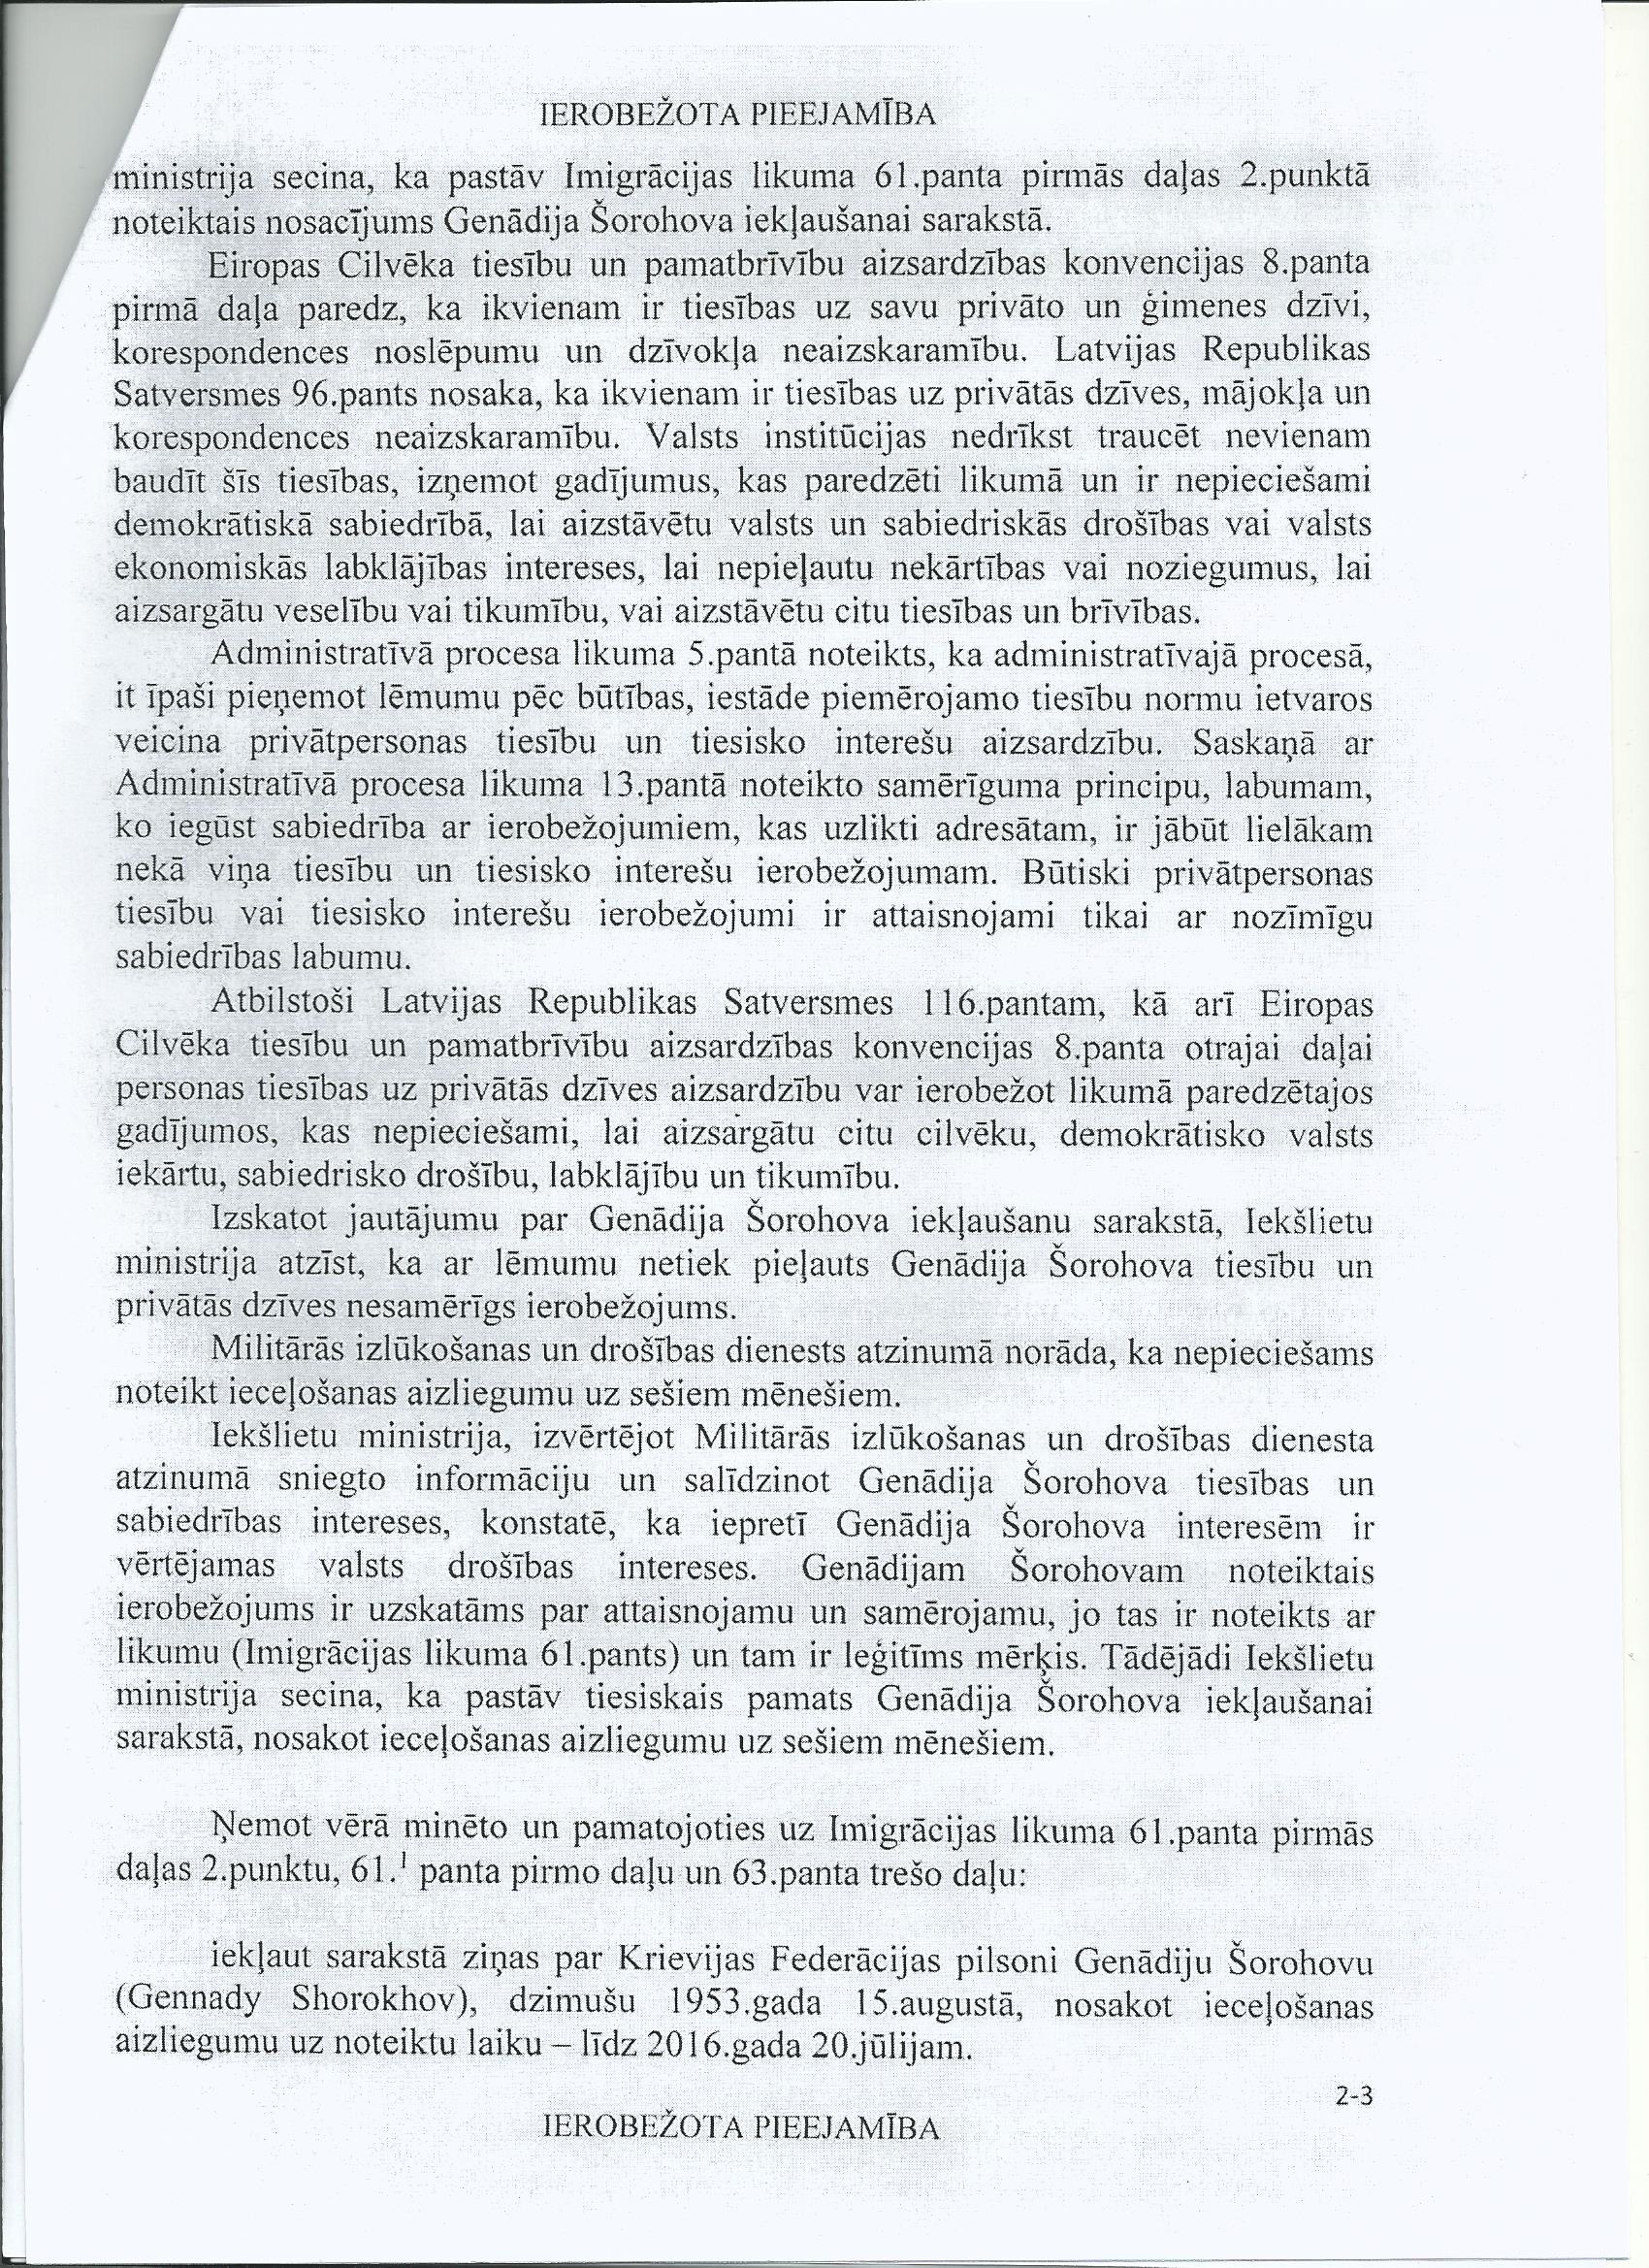 Скрин уведомления, полученного от Службы охраны и военной разведки Латвии